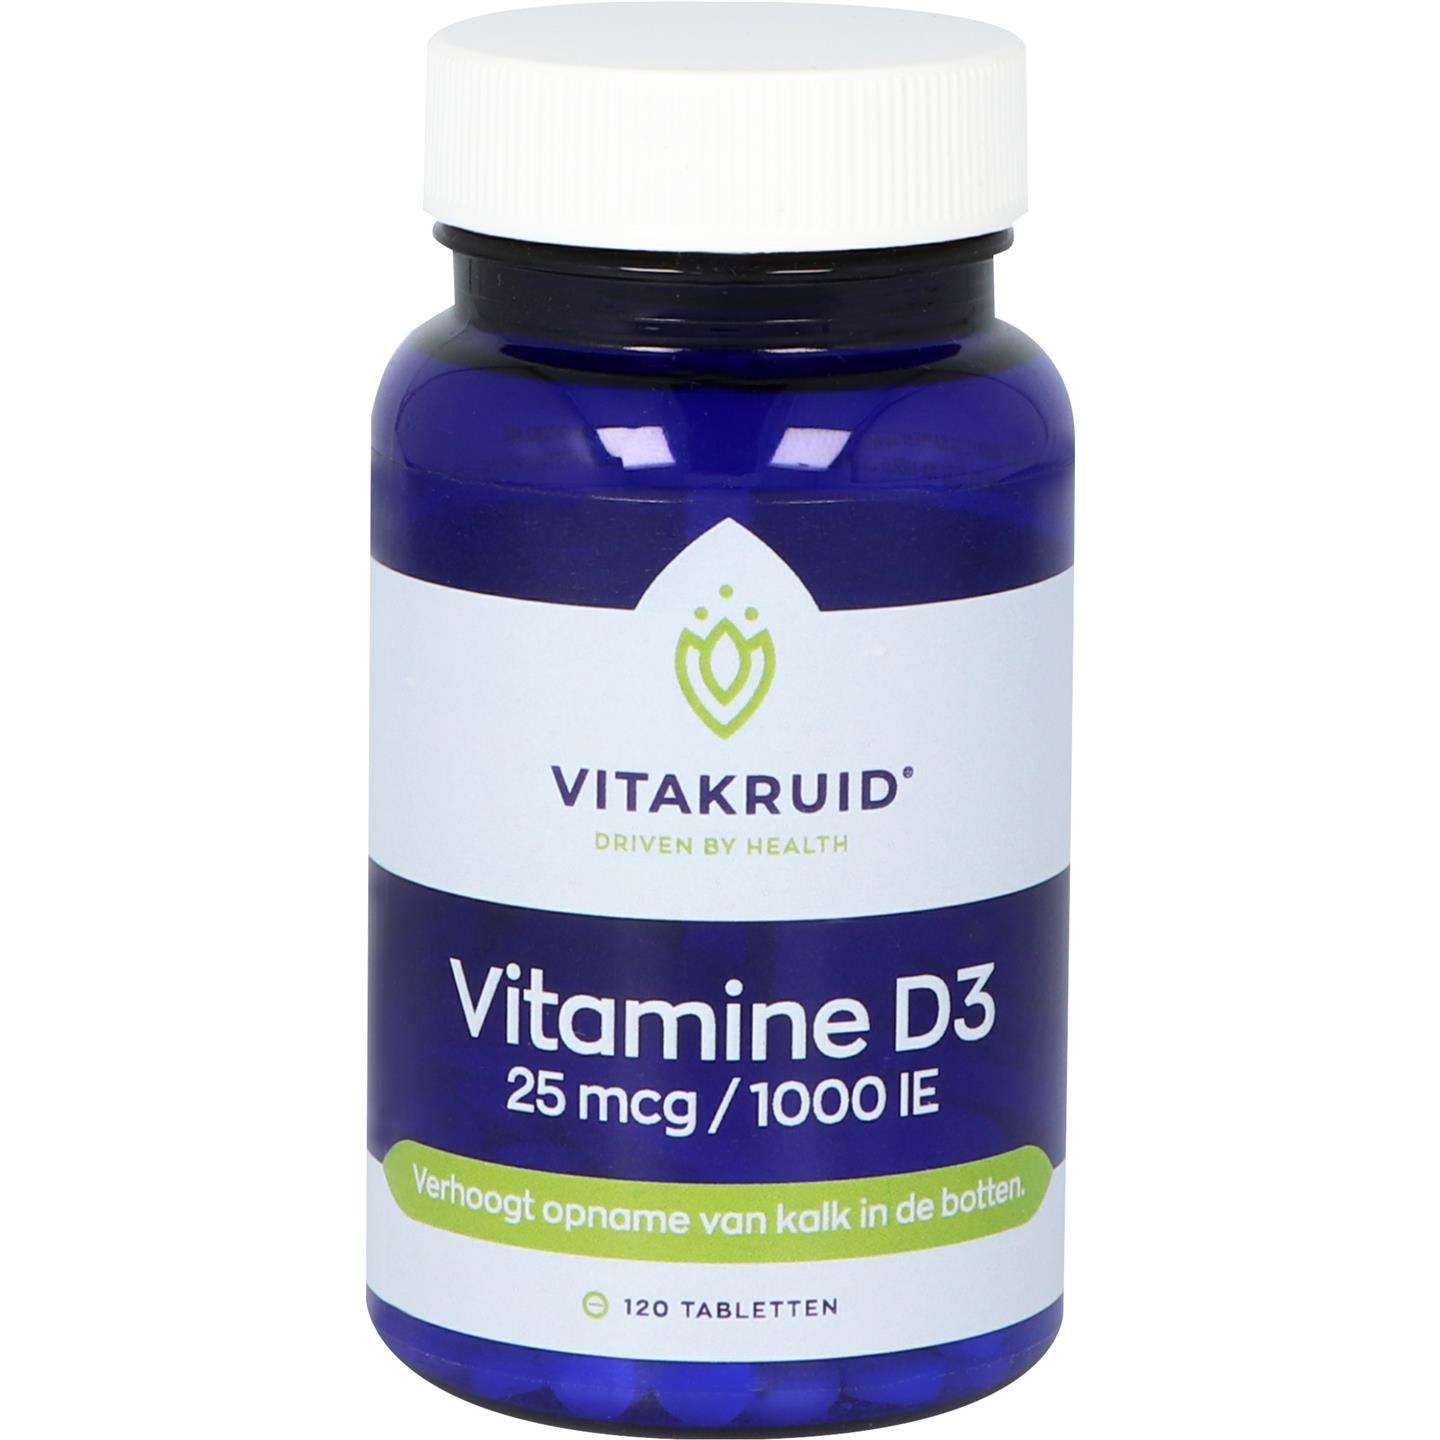 Vitamine D3 25 mcg